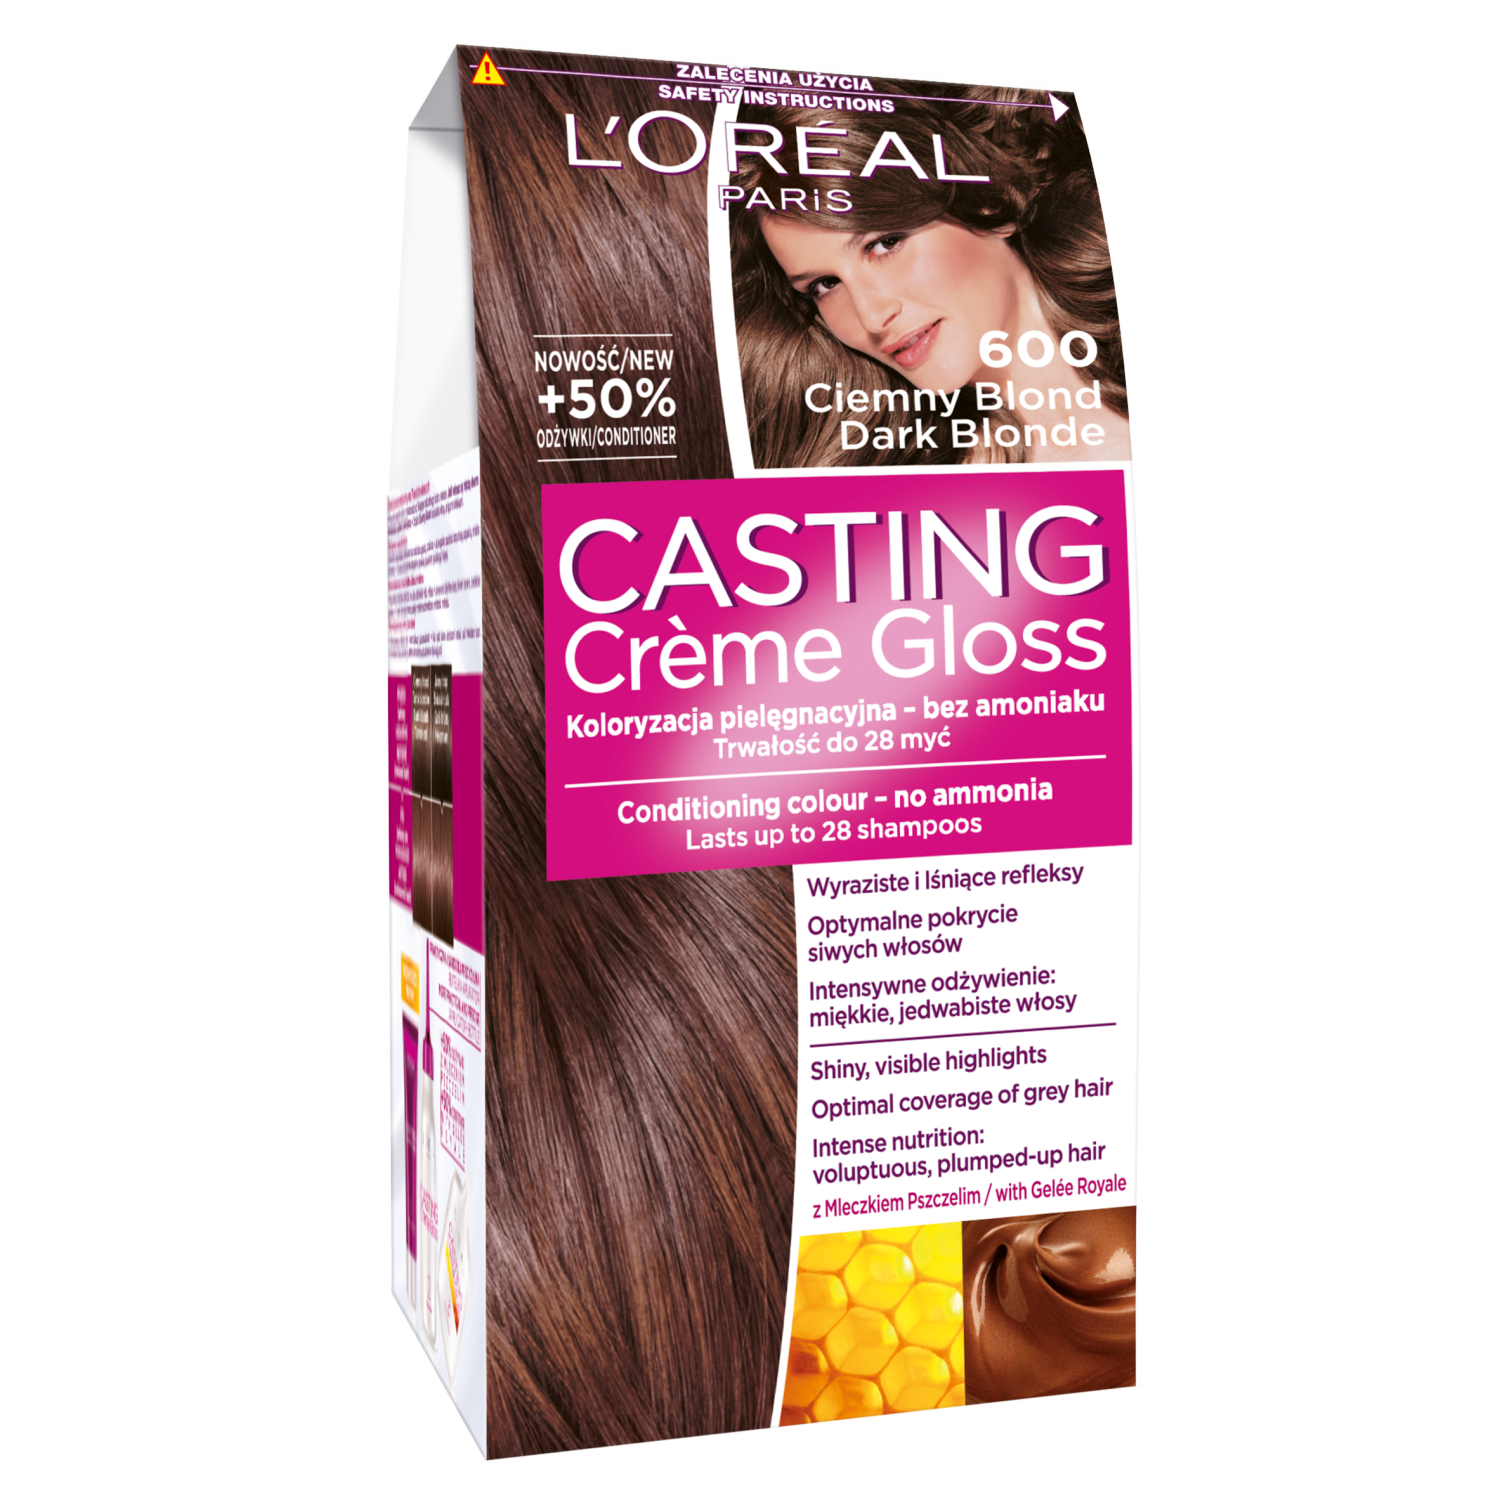 L'Oreal Paris farba do włosów 600 ciemny blond Casting Creme Gloss | hebe.pl